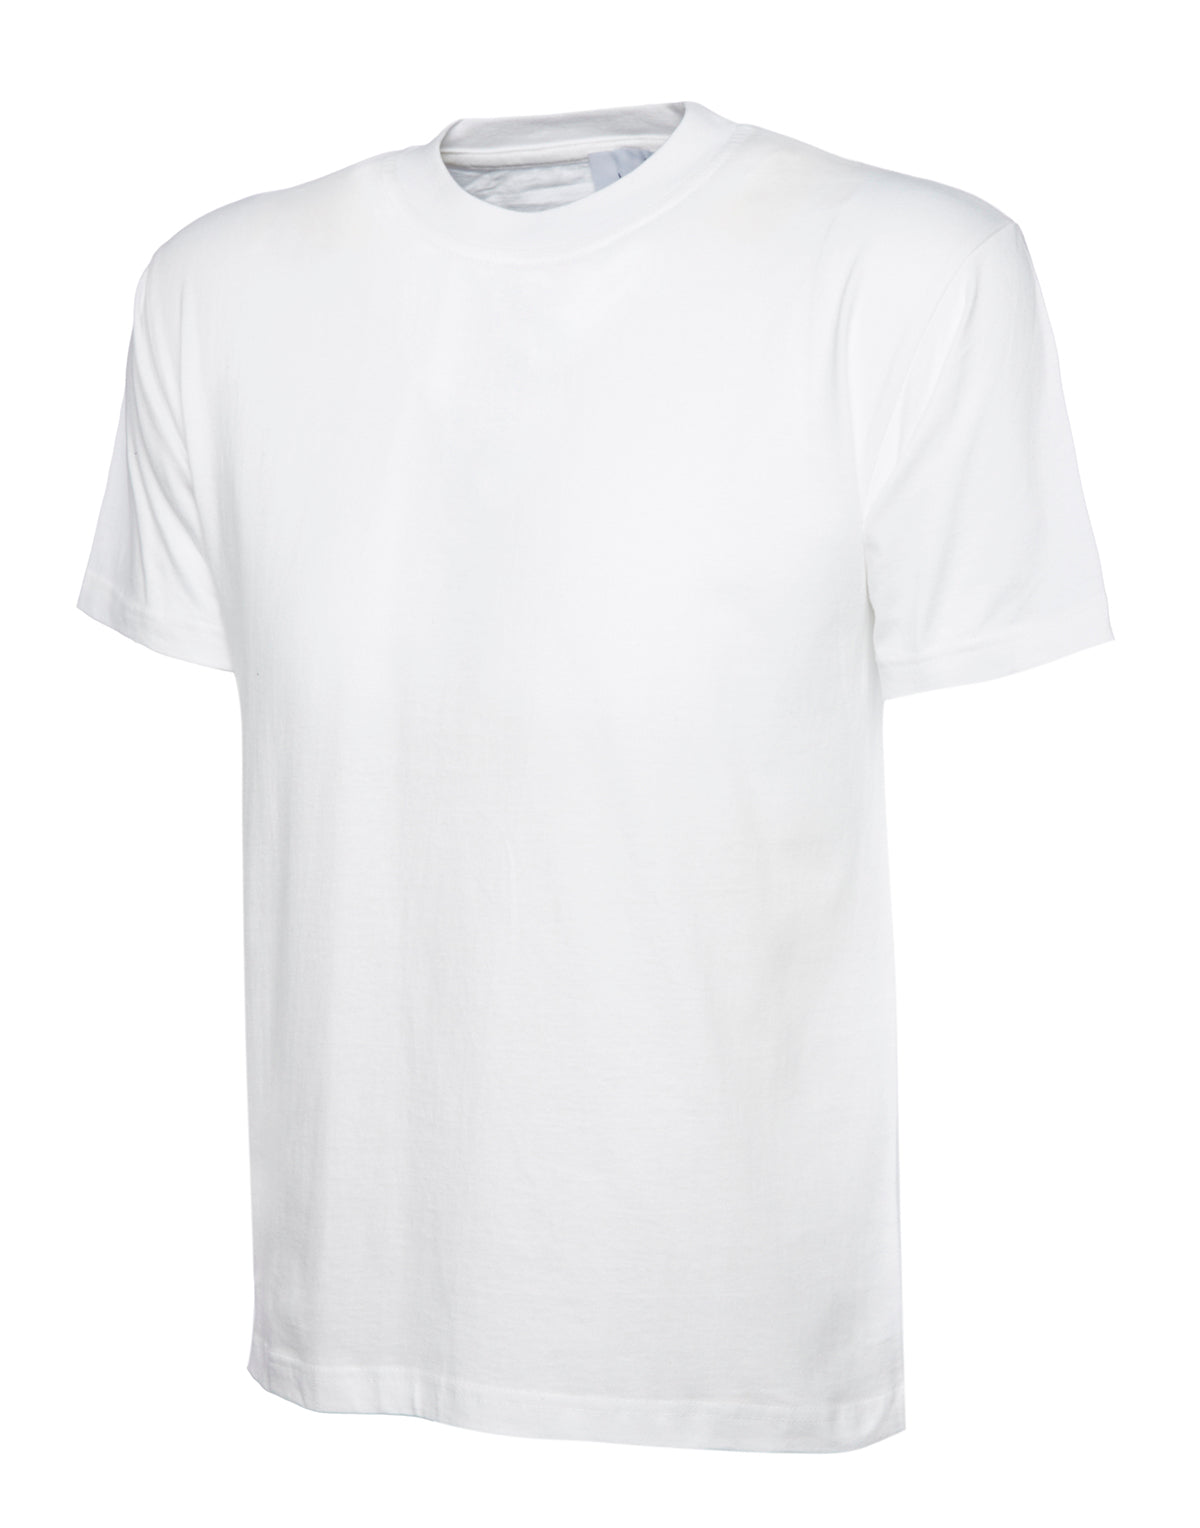 premium_t-shirt_white